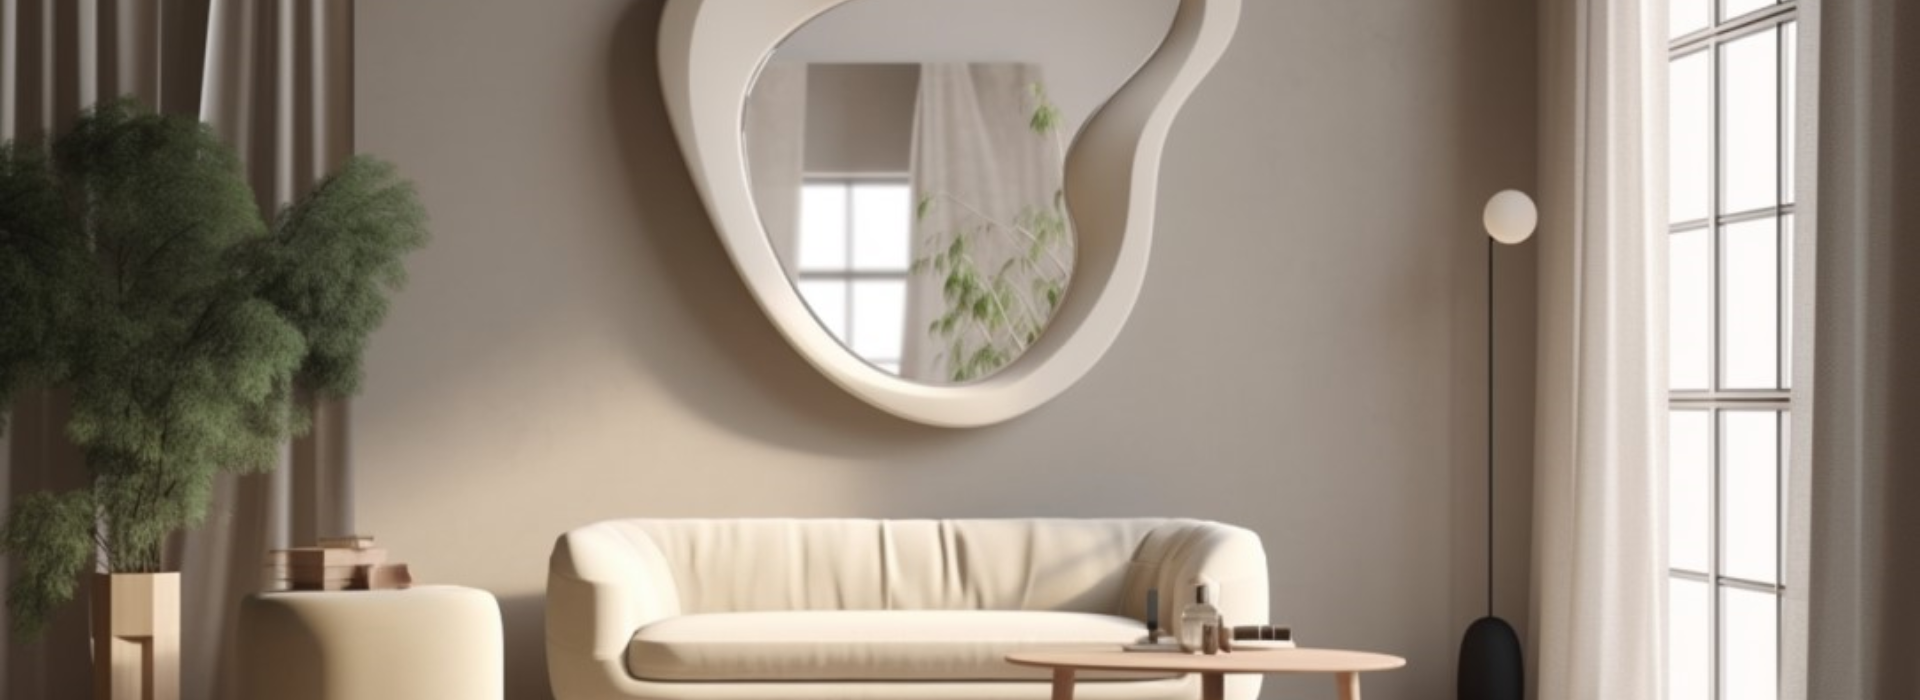 Nowoczesne wnętrze, w centrum na ścianie wisi duże białe lustro o nieregularnym kształcie. Pod lustrem stoi sofa i stolik. Obok umieszczona jest duża doniczka z rośliną.